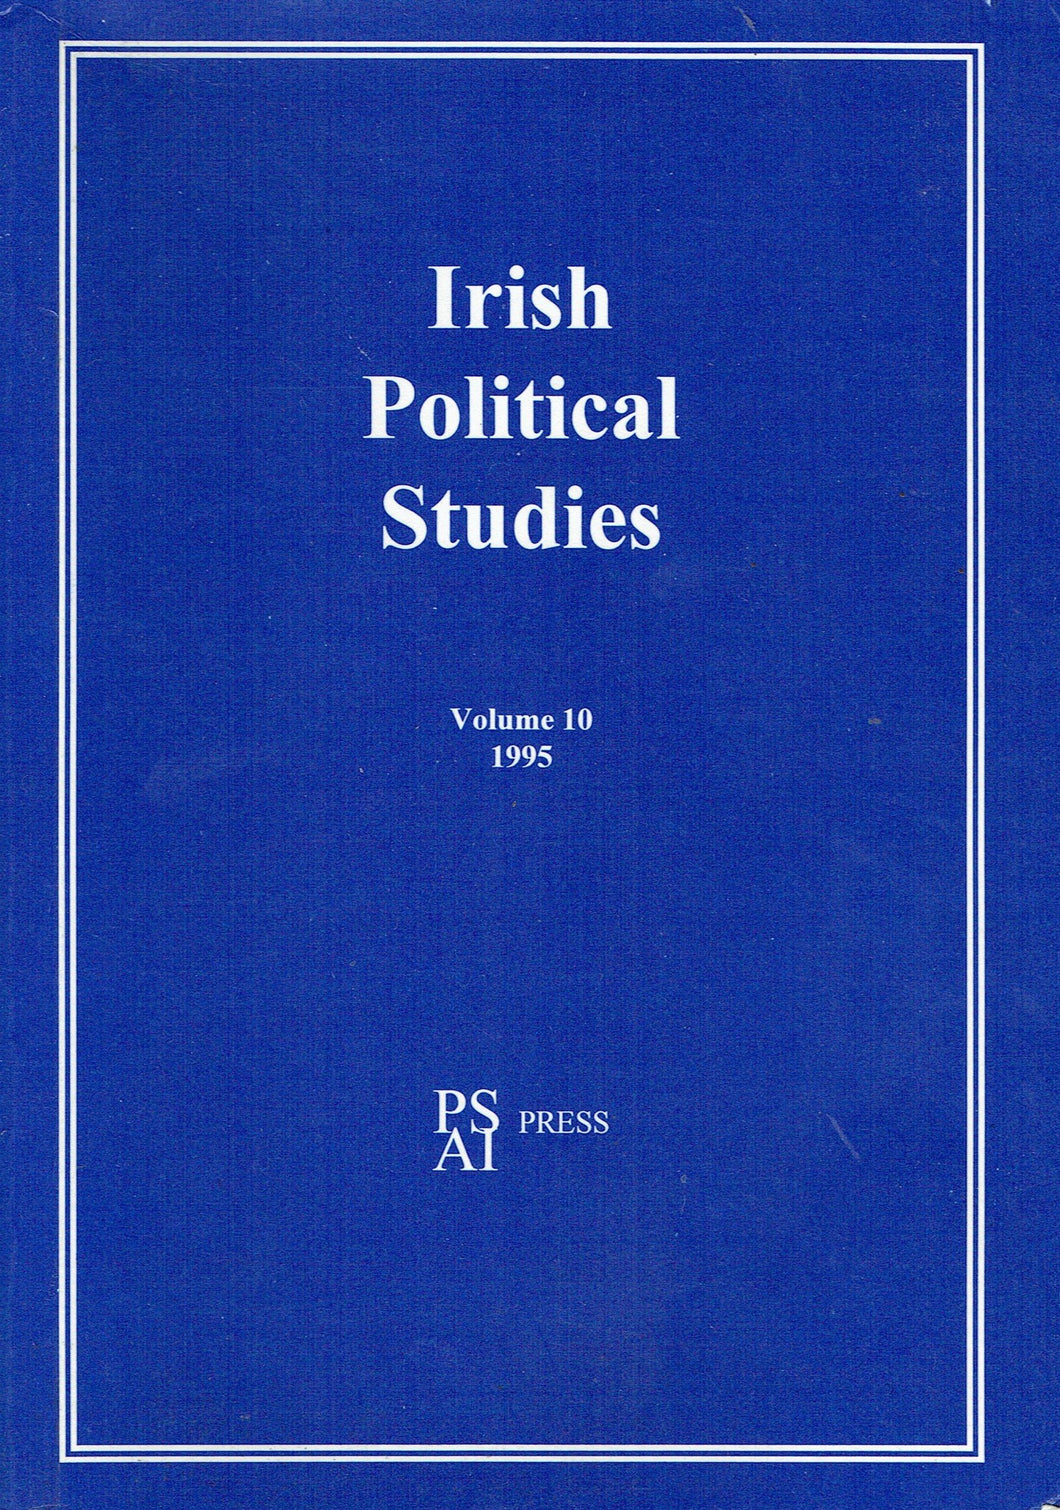 Irish Political Studies - Volume 10 - 1995